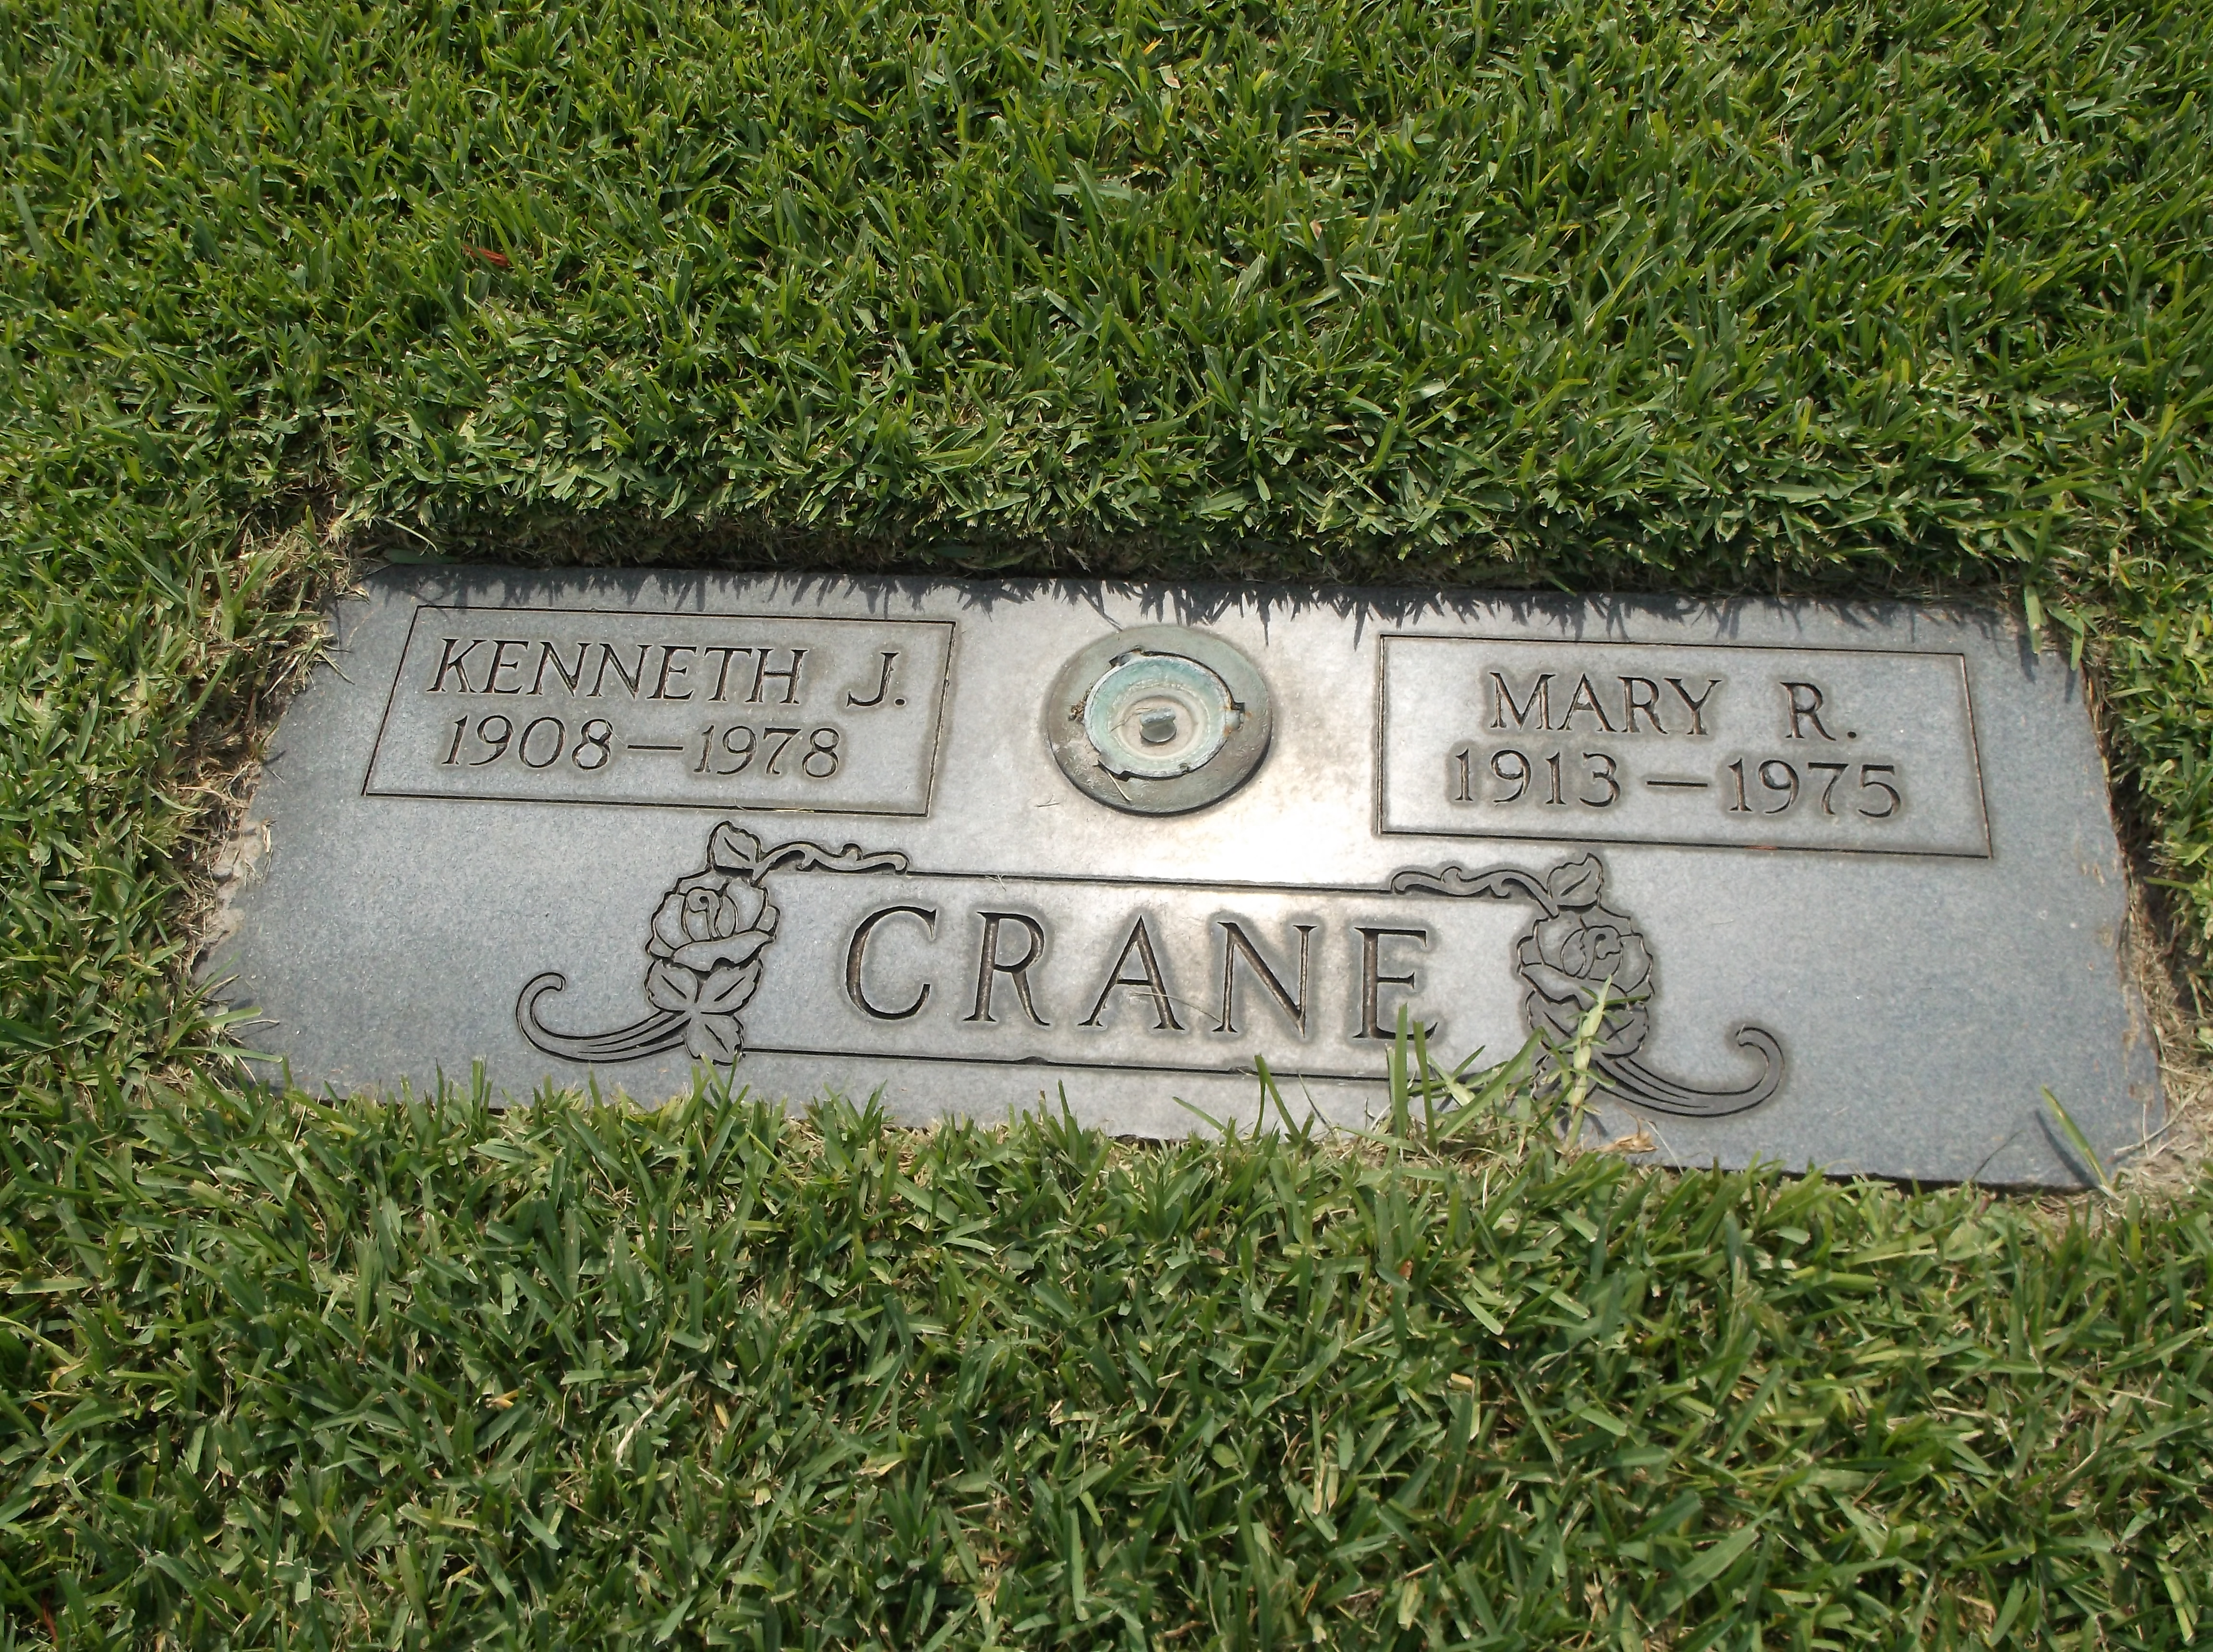 Kenneth J Crane